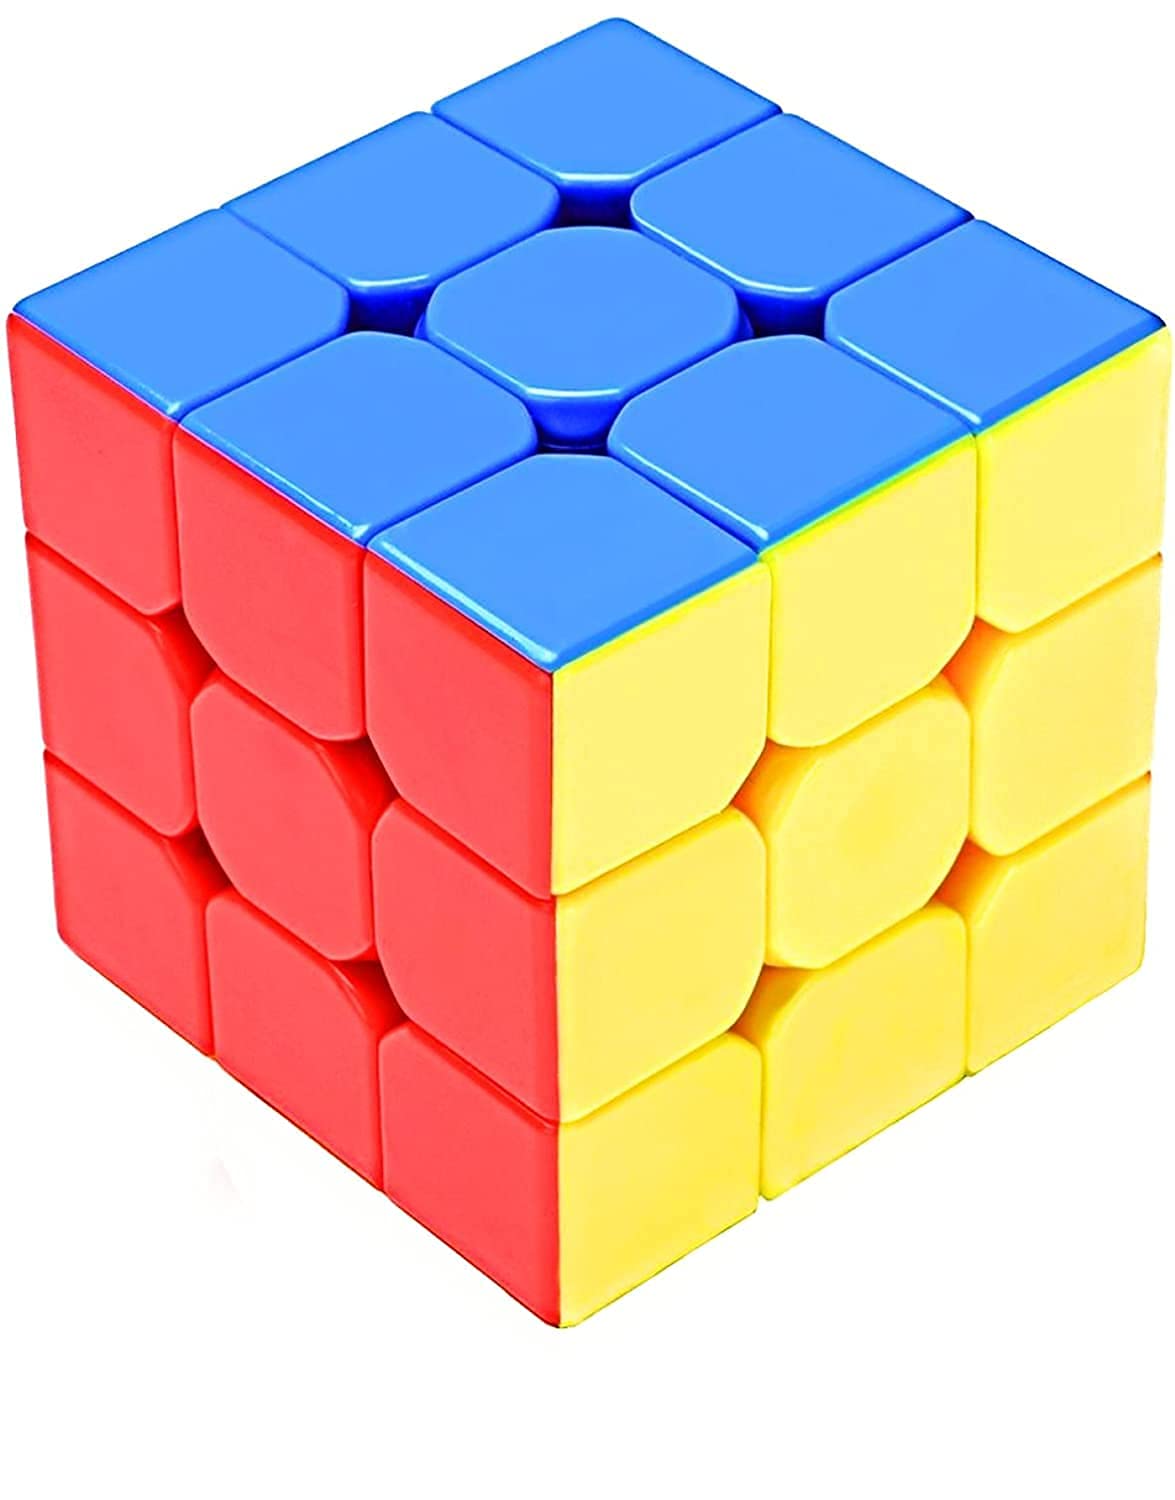 Classic Cubestar Puzzle games